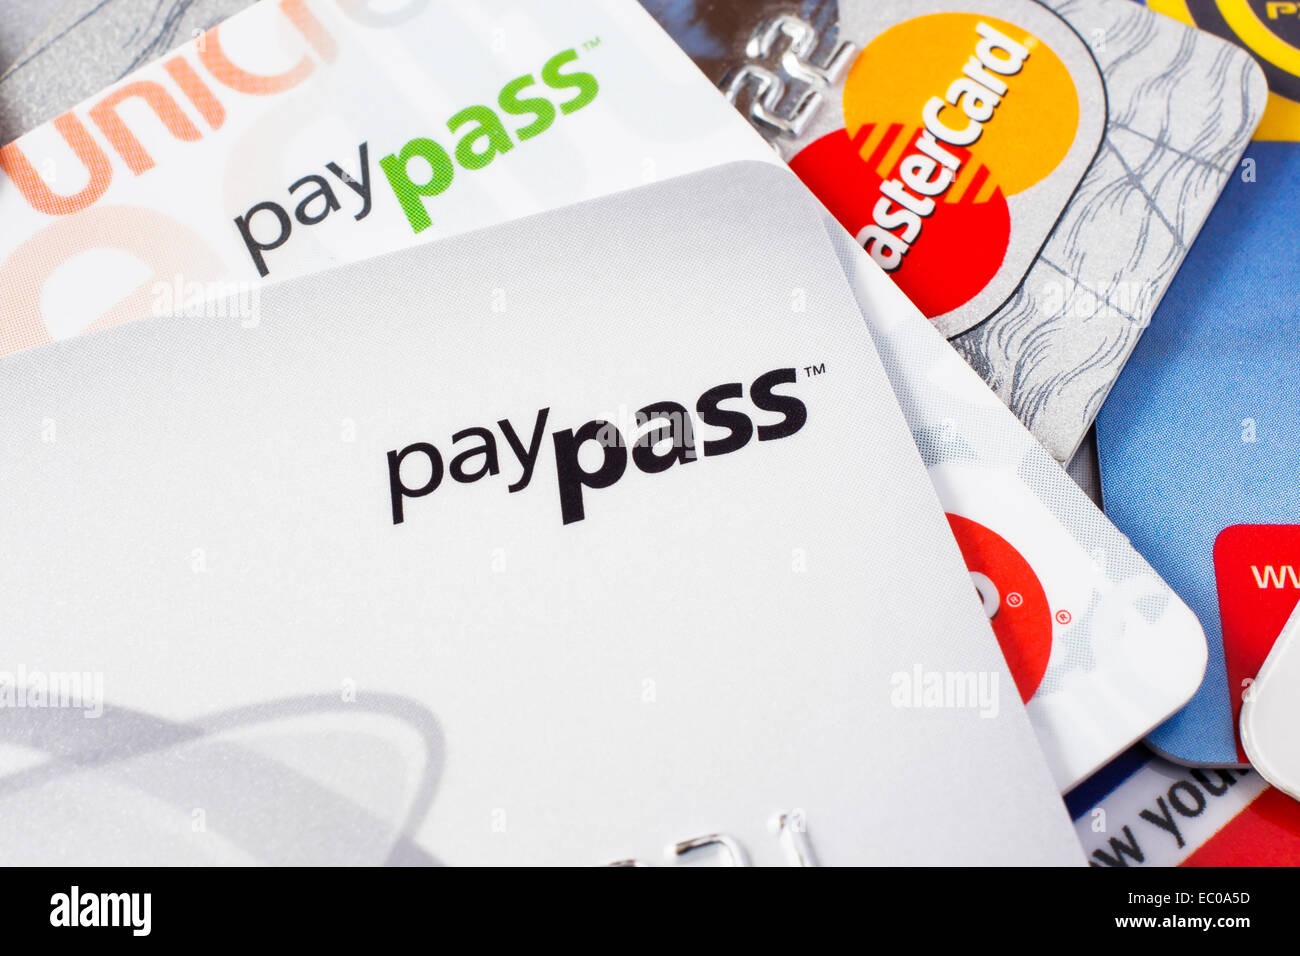 GDANSK, Pologne - 16 avril 2014. Cartes de crédit avec la technologie paypass. Utilisez uniquement éditoriale Banque D'Images